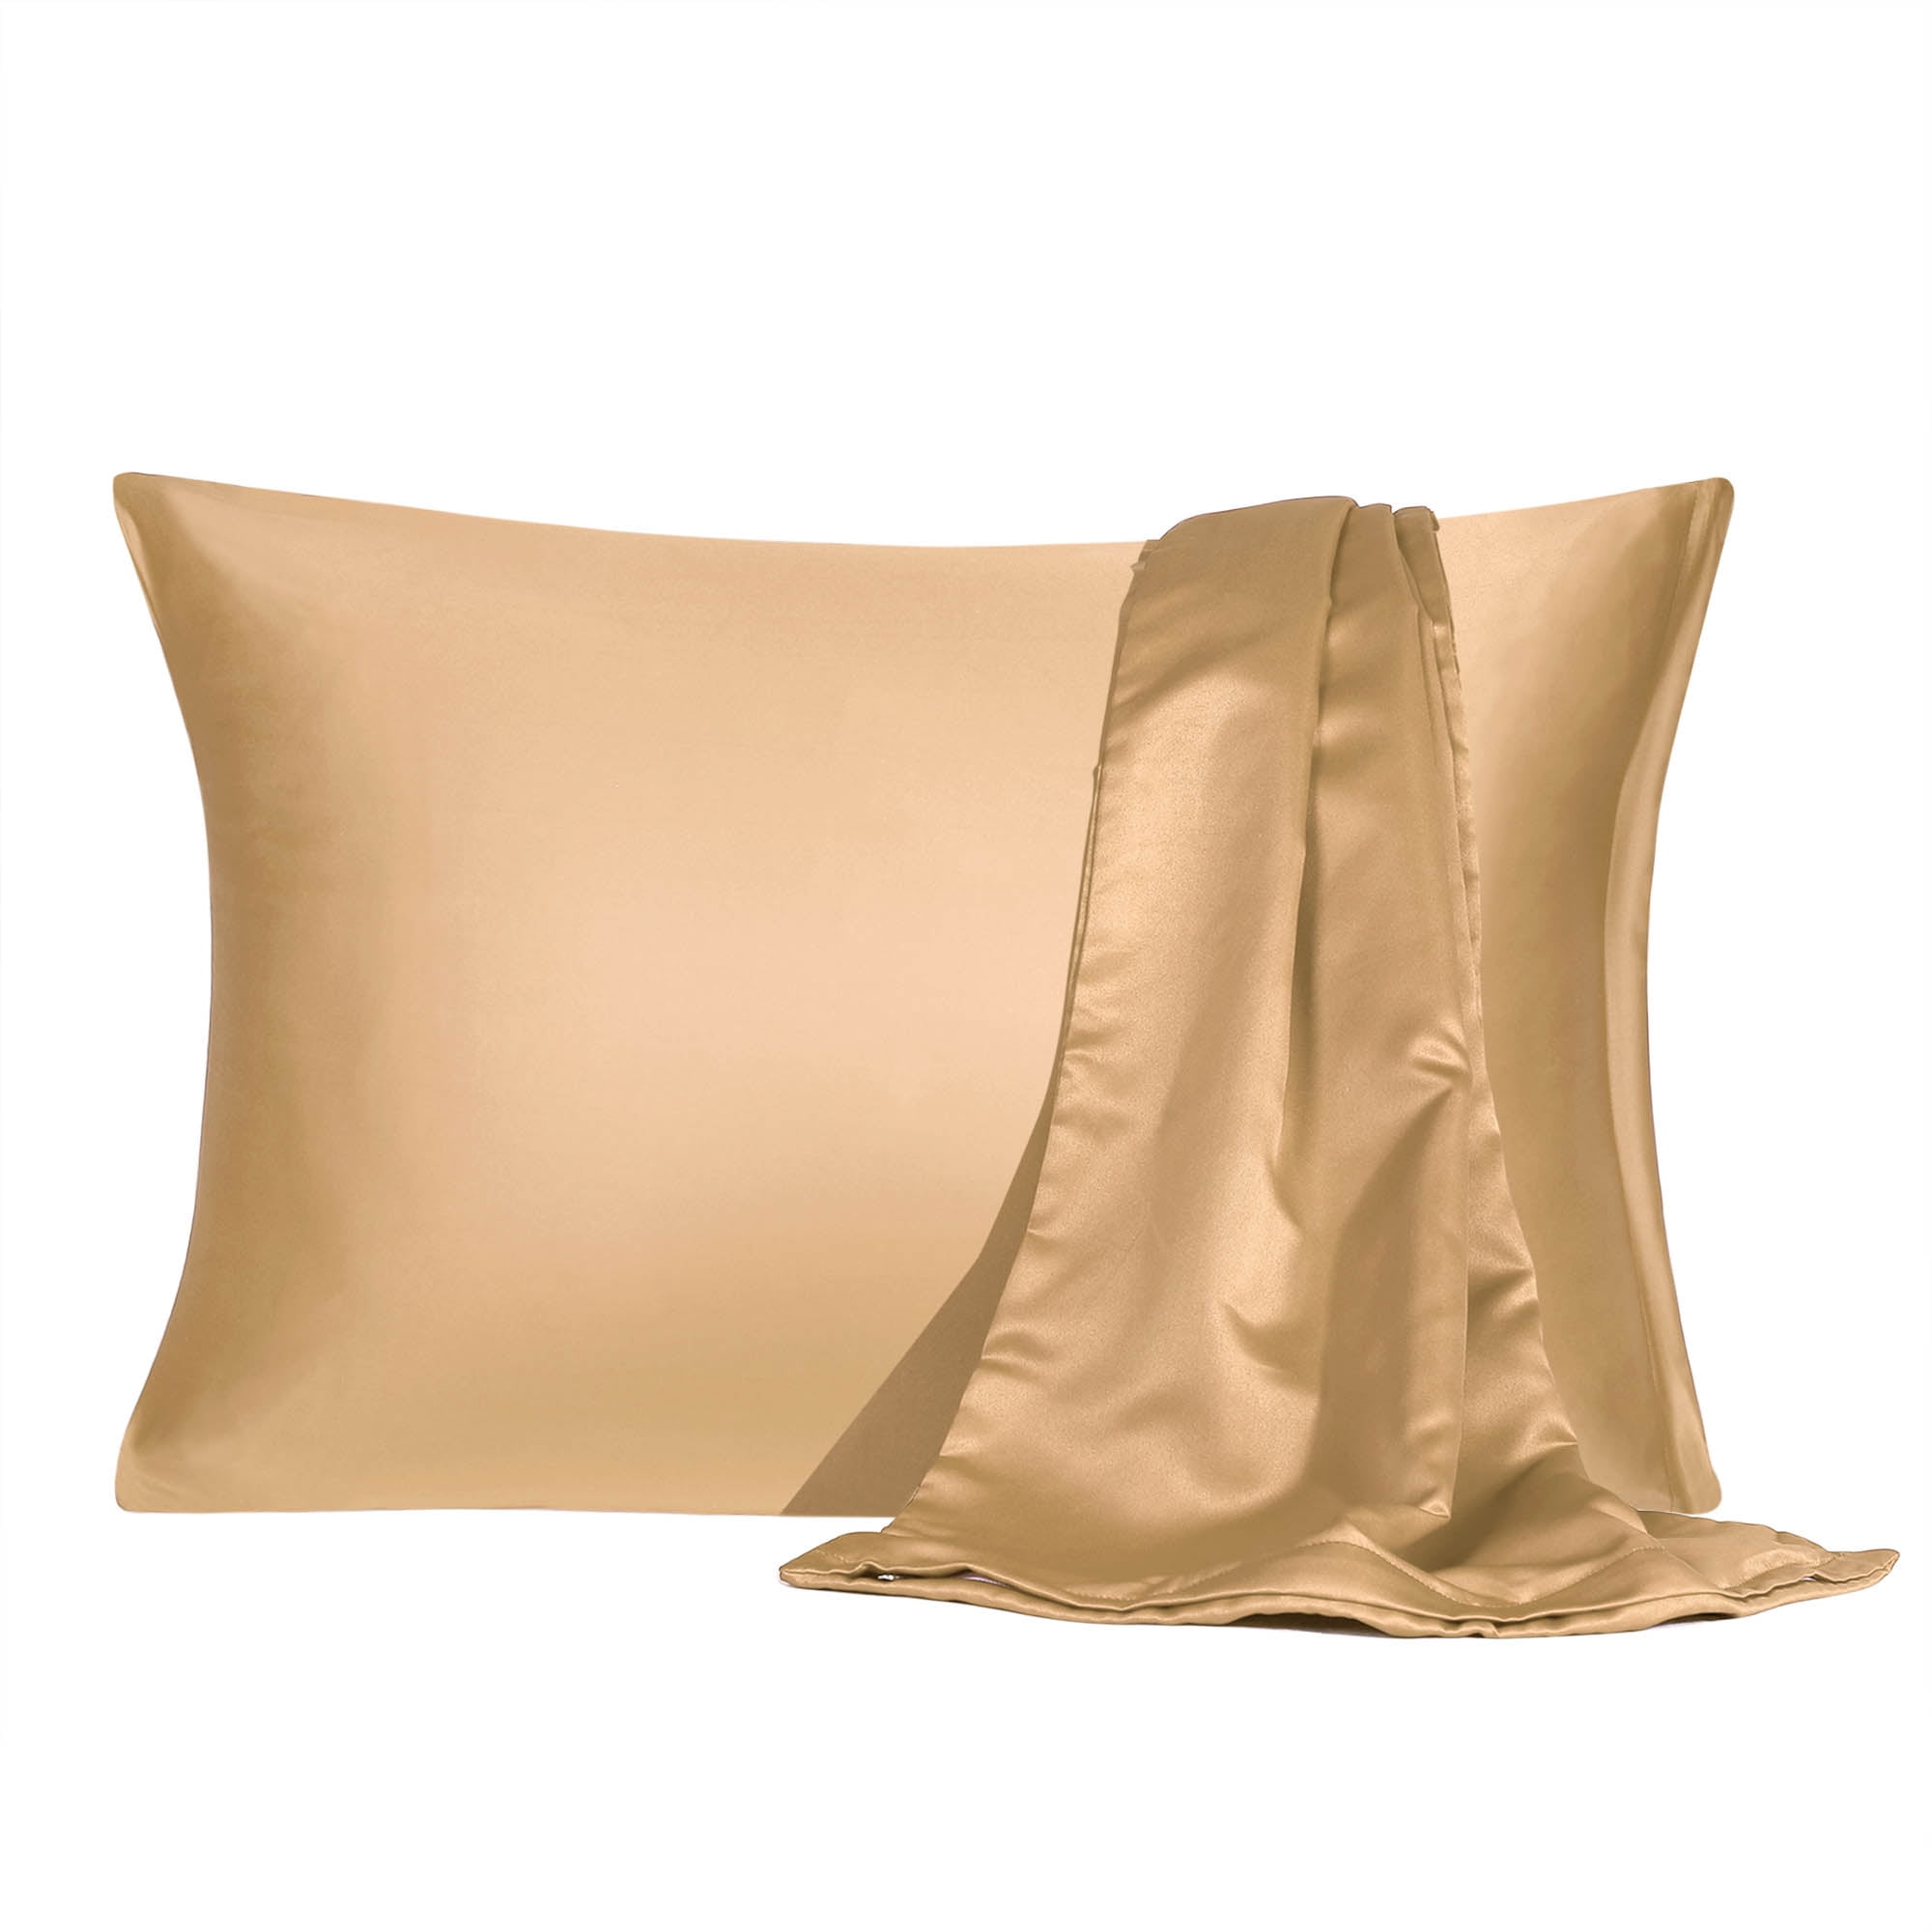 gold pillow cases walmart